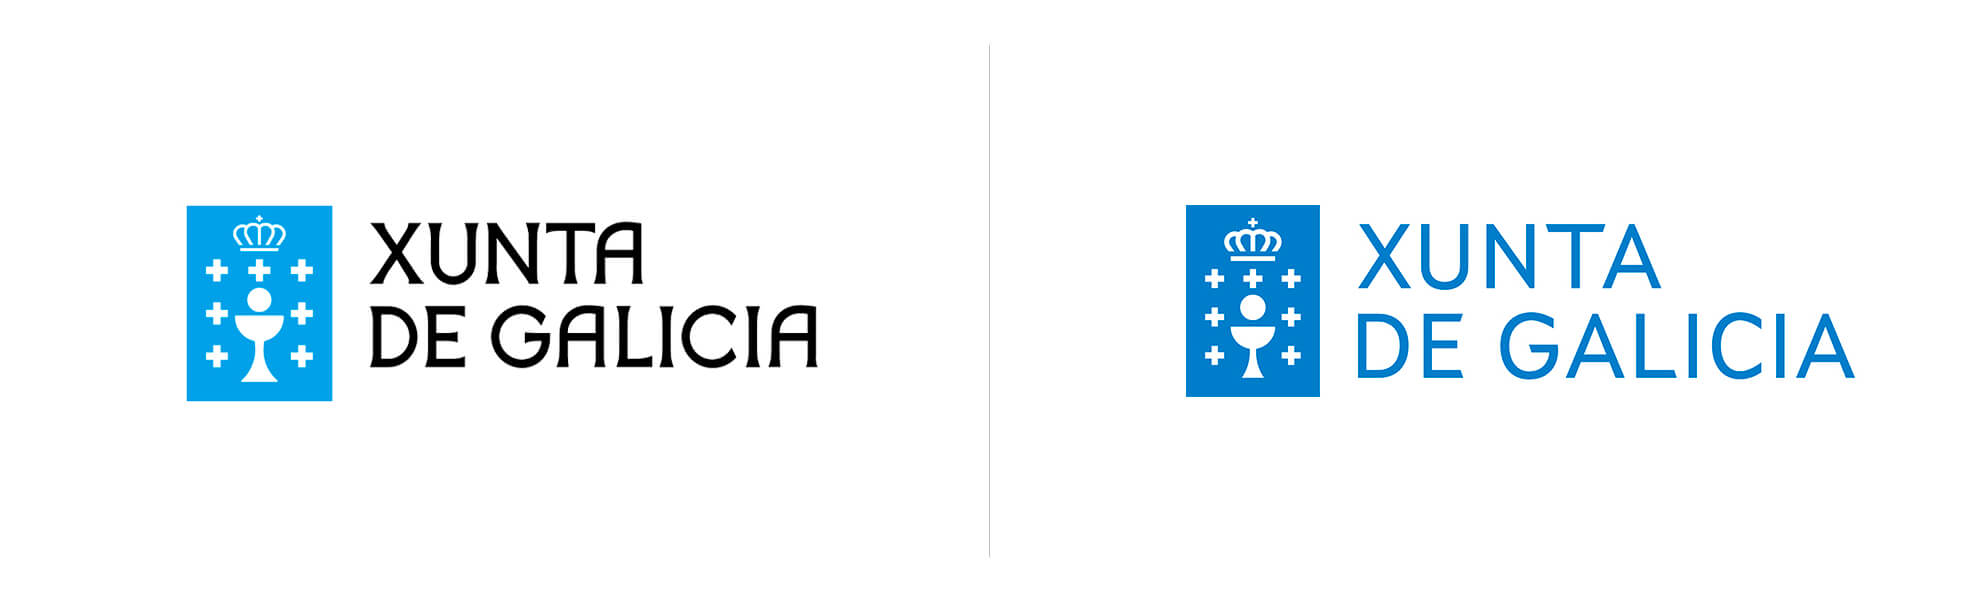 Xunta de Galicia z nowym logo i systemem wizualnym